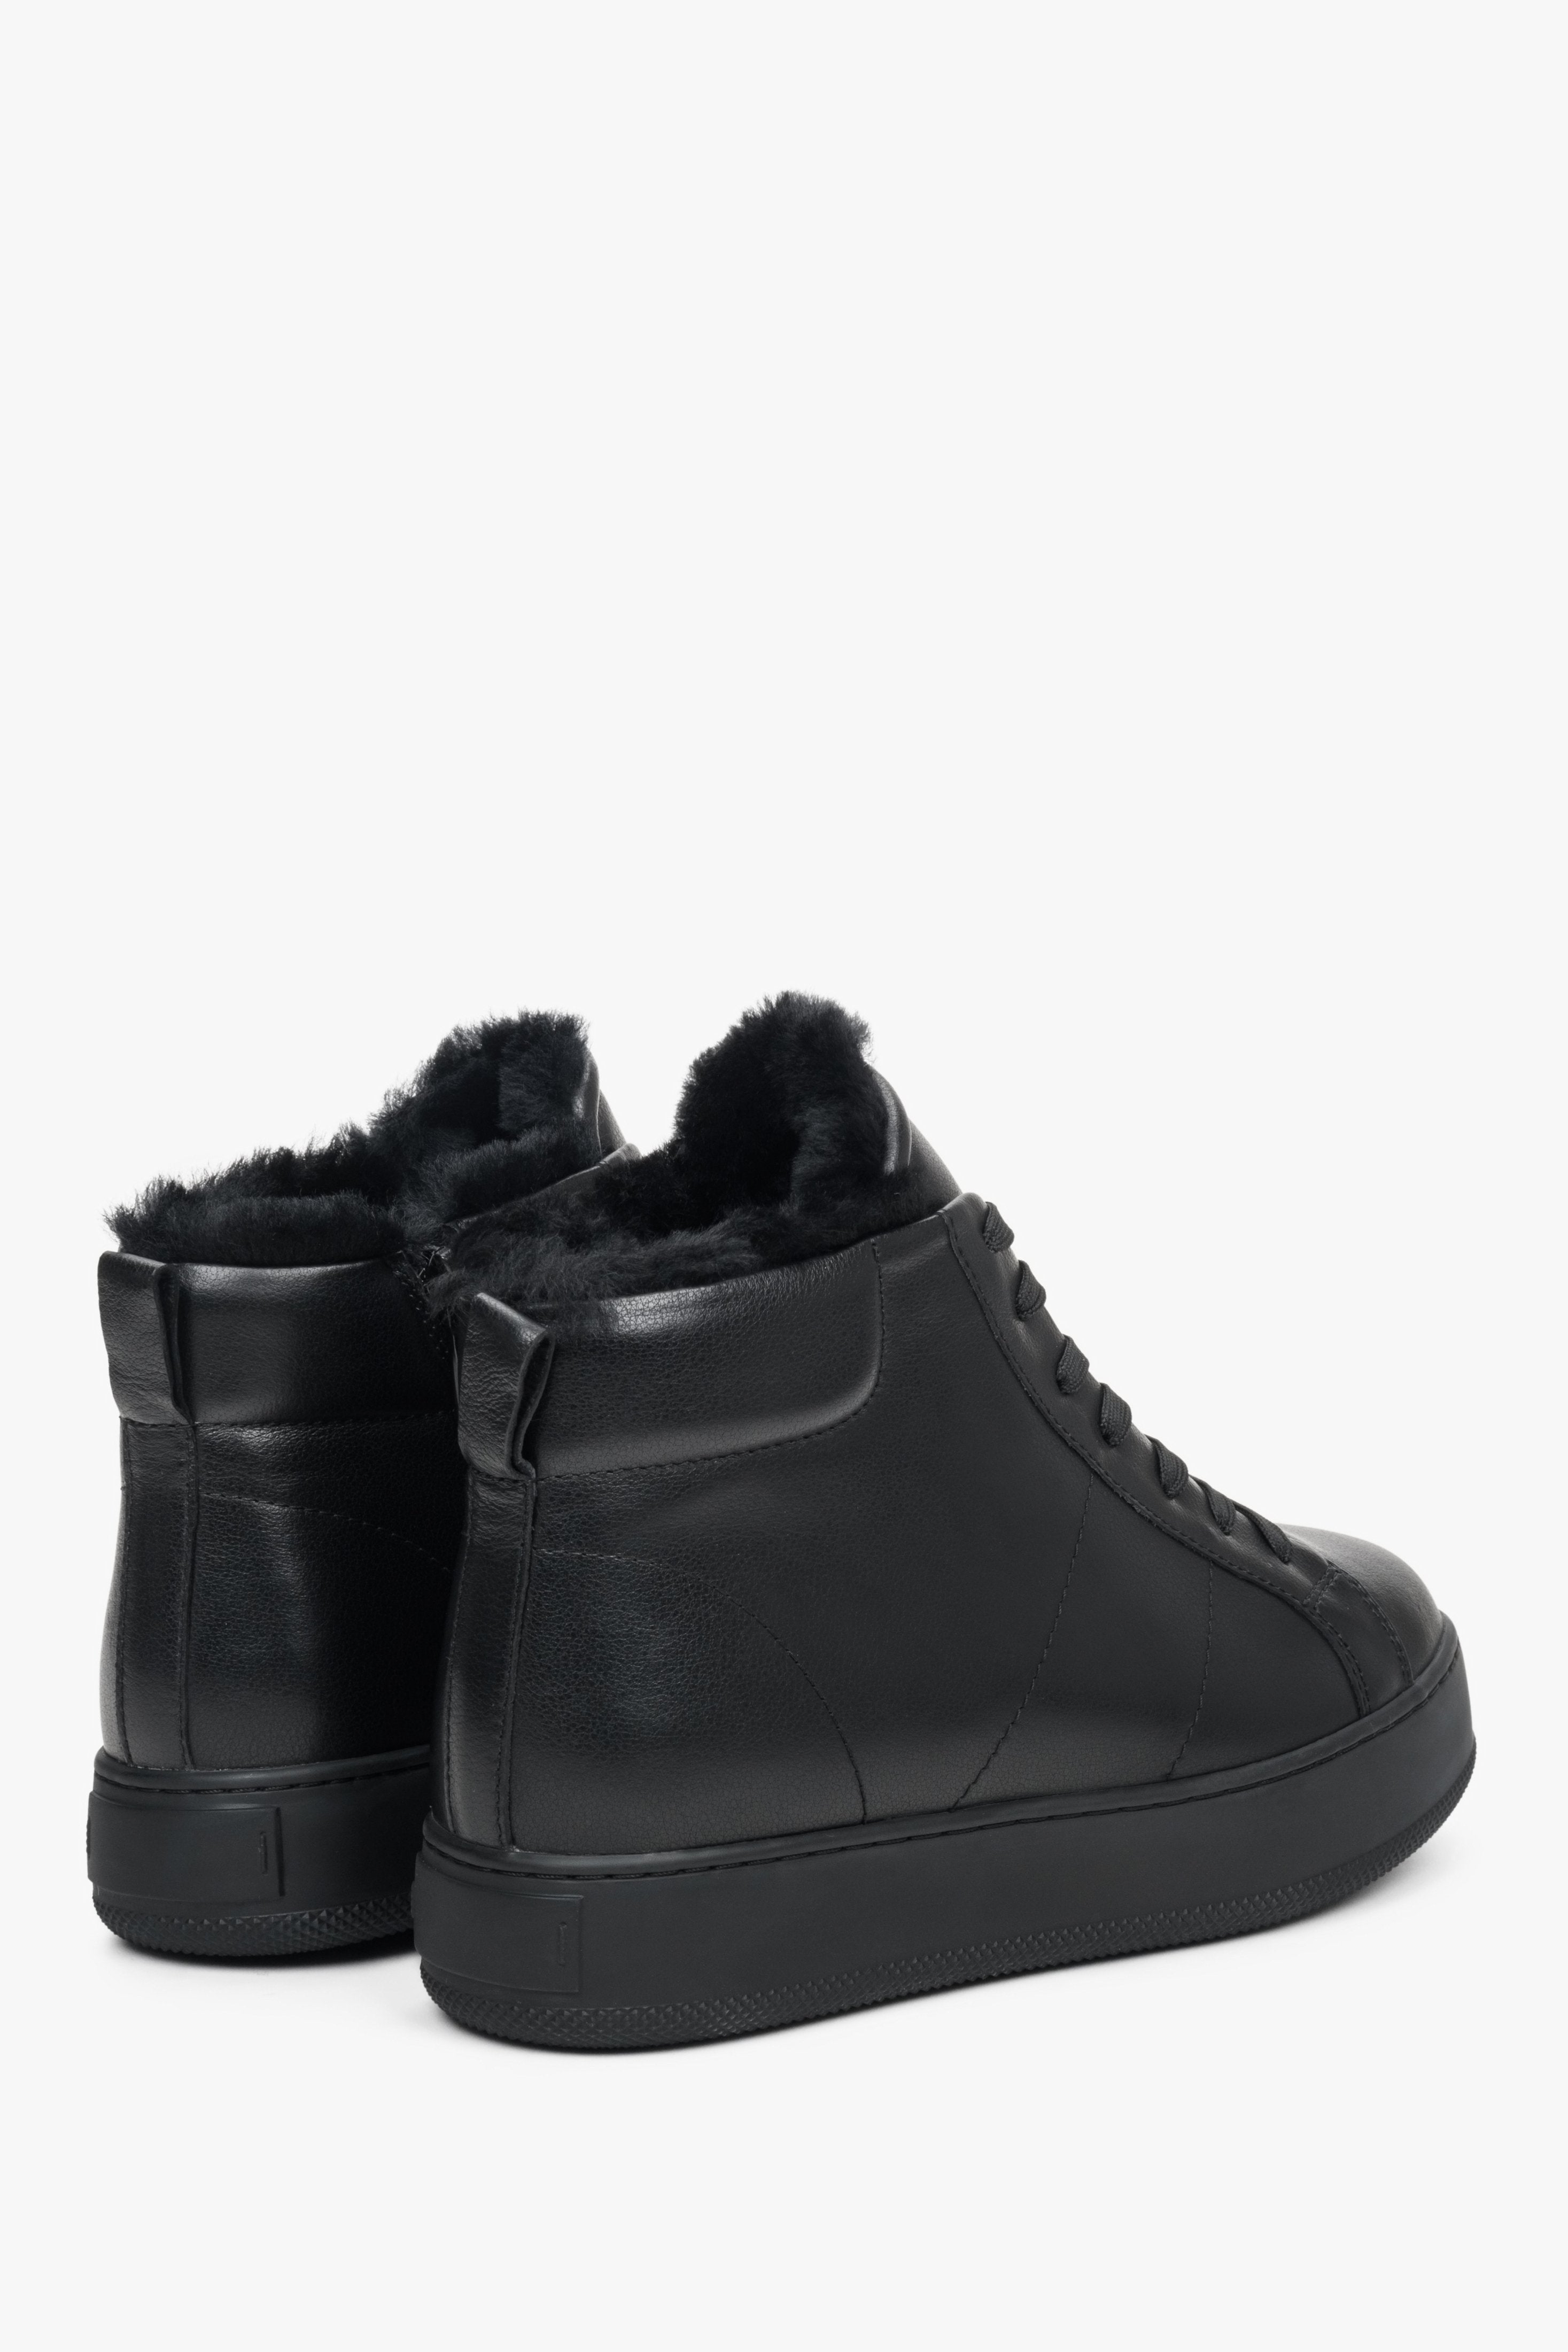 Buty sneakersy damskie na zimę Estro - tylna część buta w kolorze czarnym.